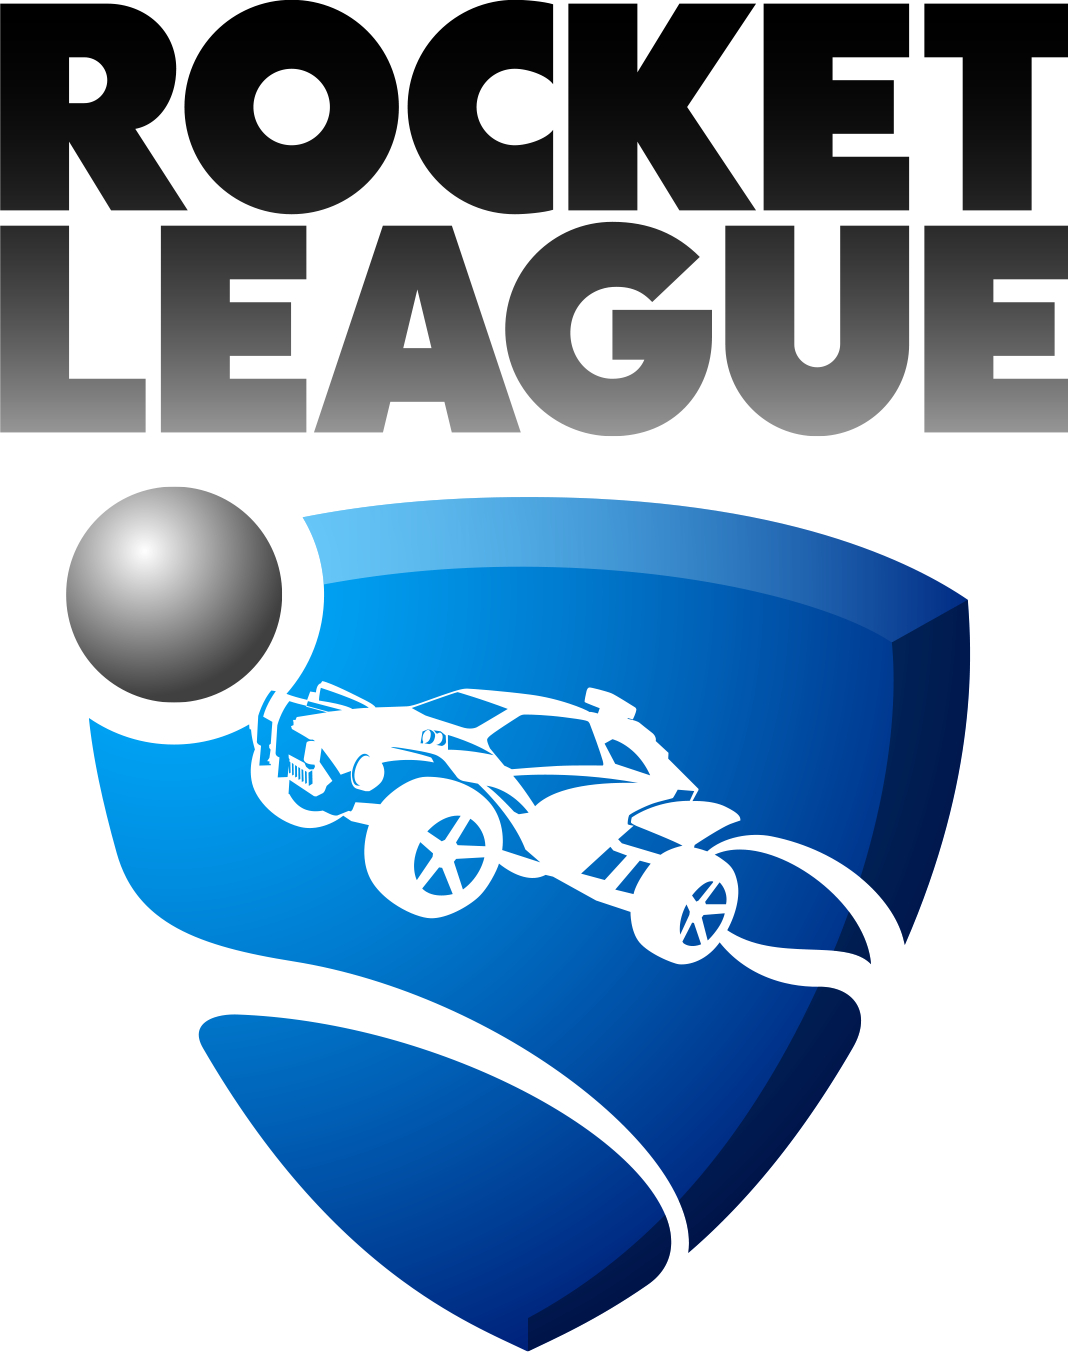 Rocket League (Video Game) - Tv Tropes pour Dessin Rocket League